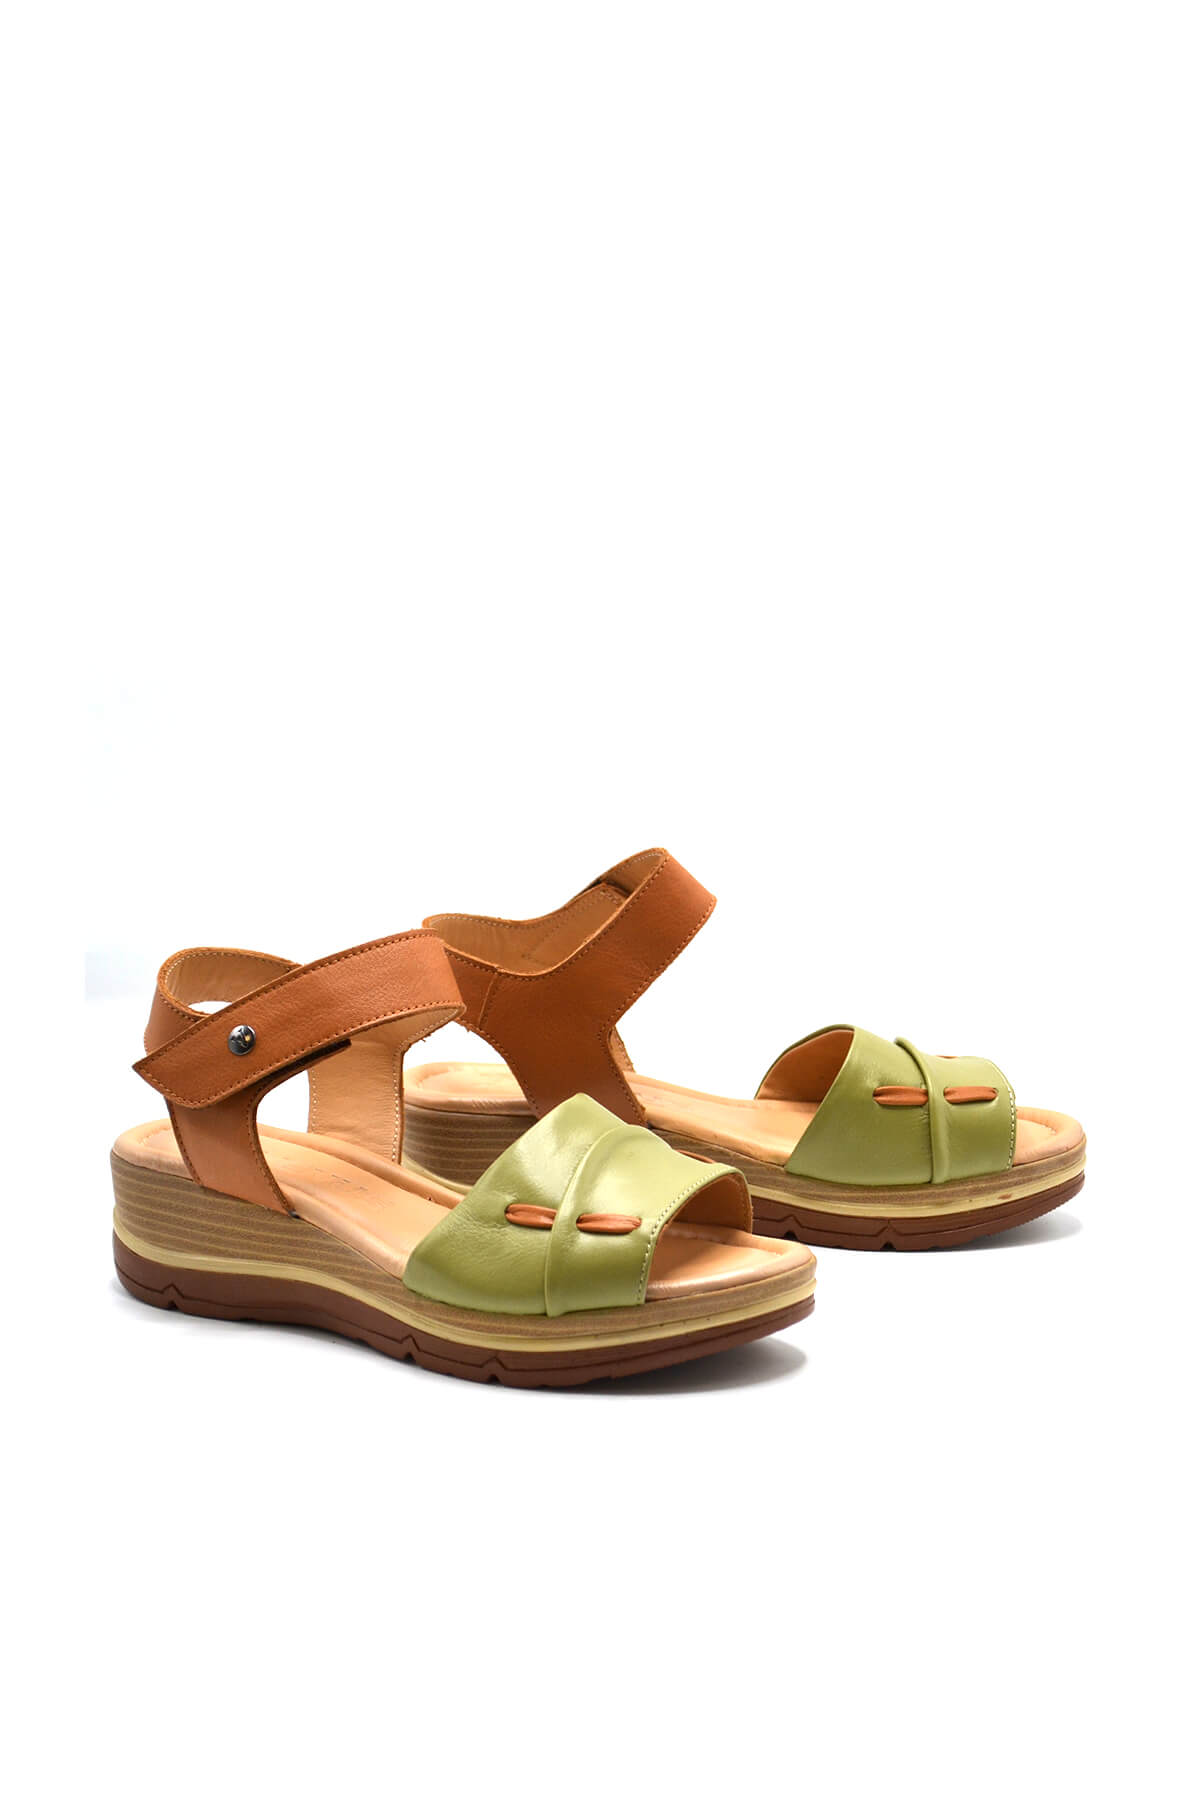 Kadın Comfort Deri Sandalet Fıstık Yeşili 2313402Y - Thumbnail